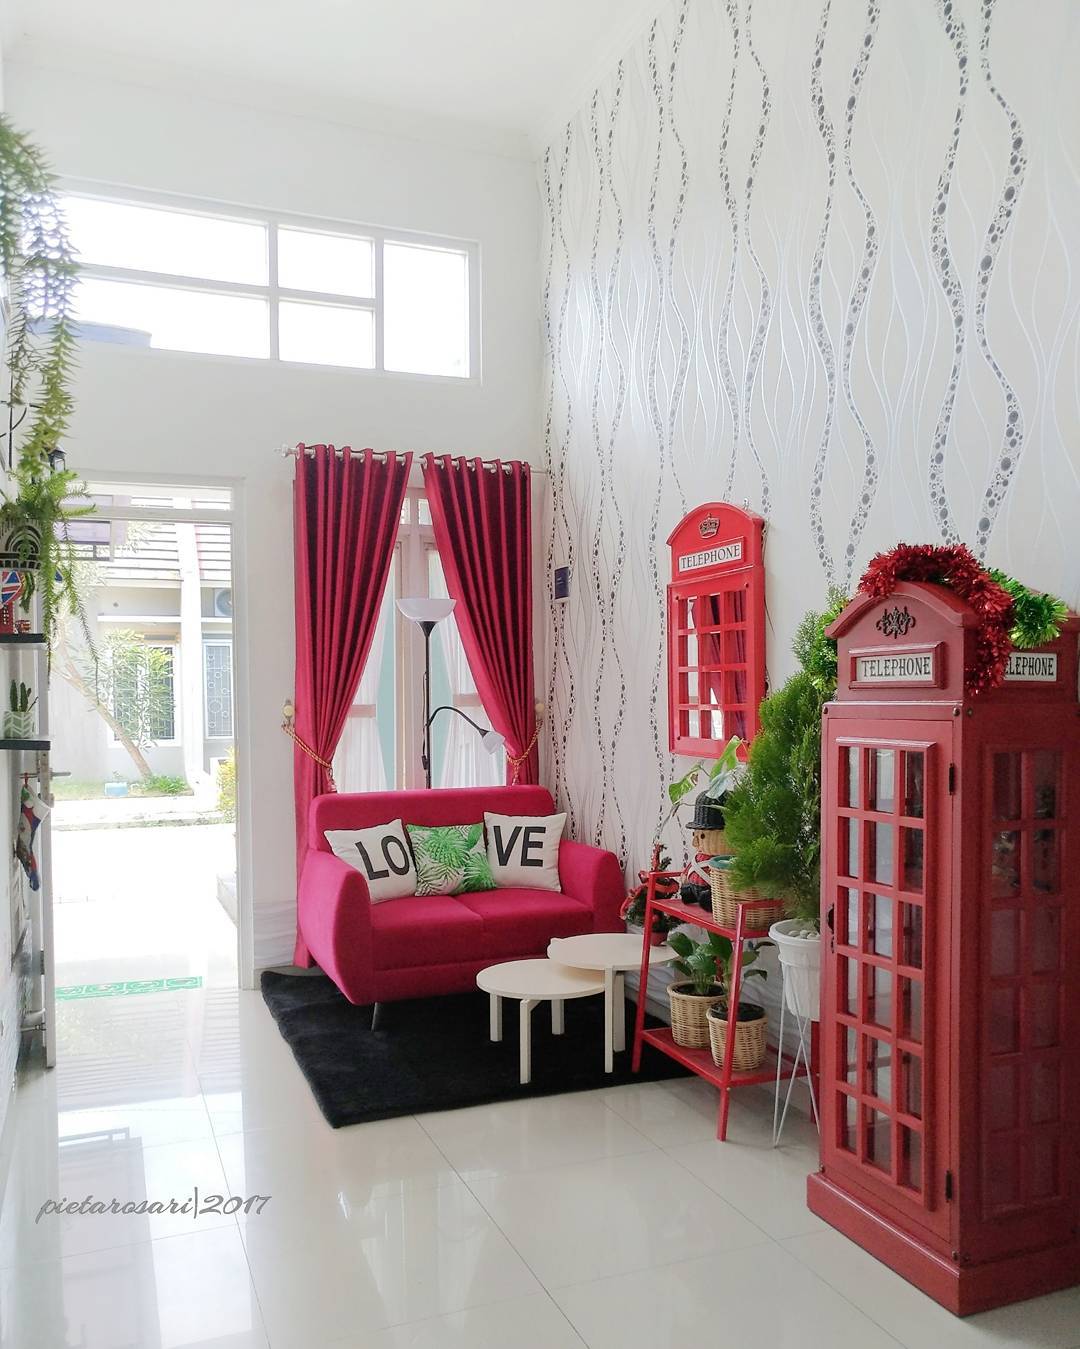  Foto  Dekorasi  Ruang Tamu Warna Merah Rumah Minimalis 